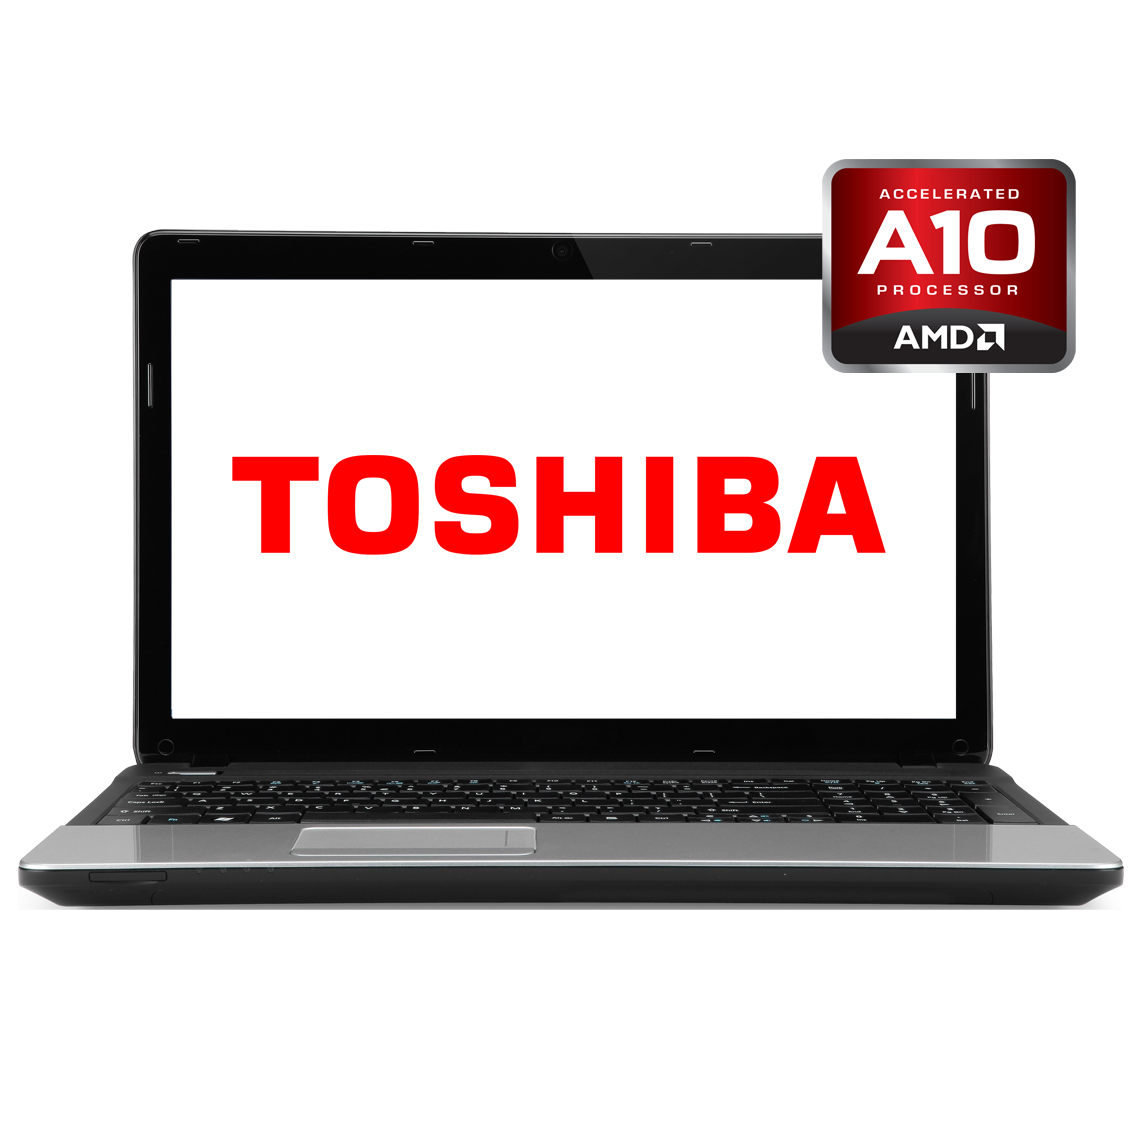 Toshiba - 13.3 inch AMD A10